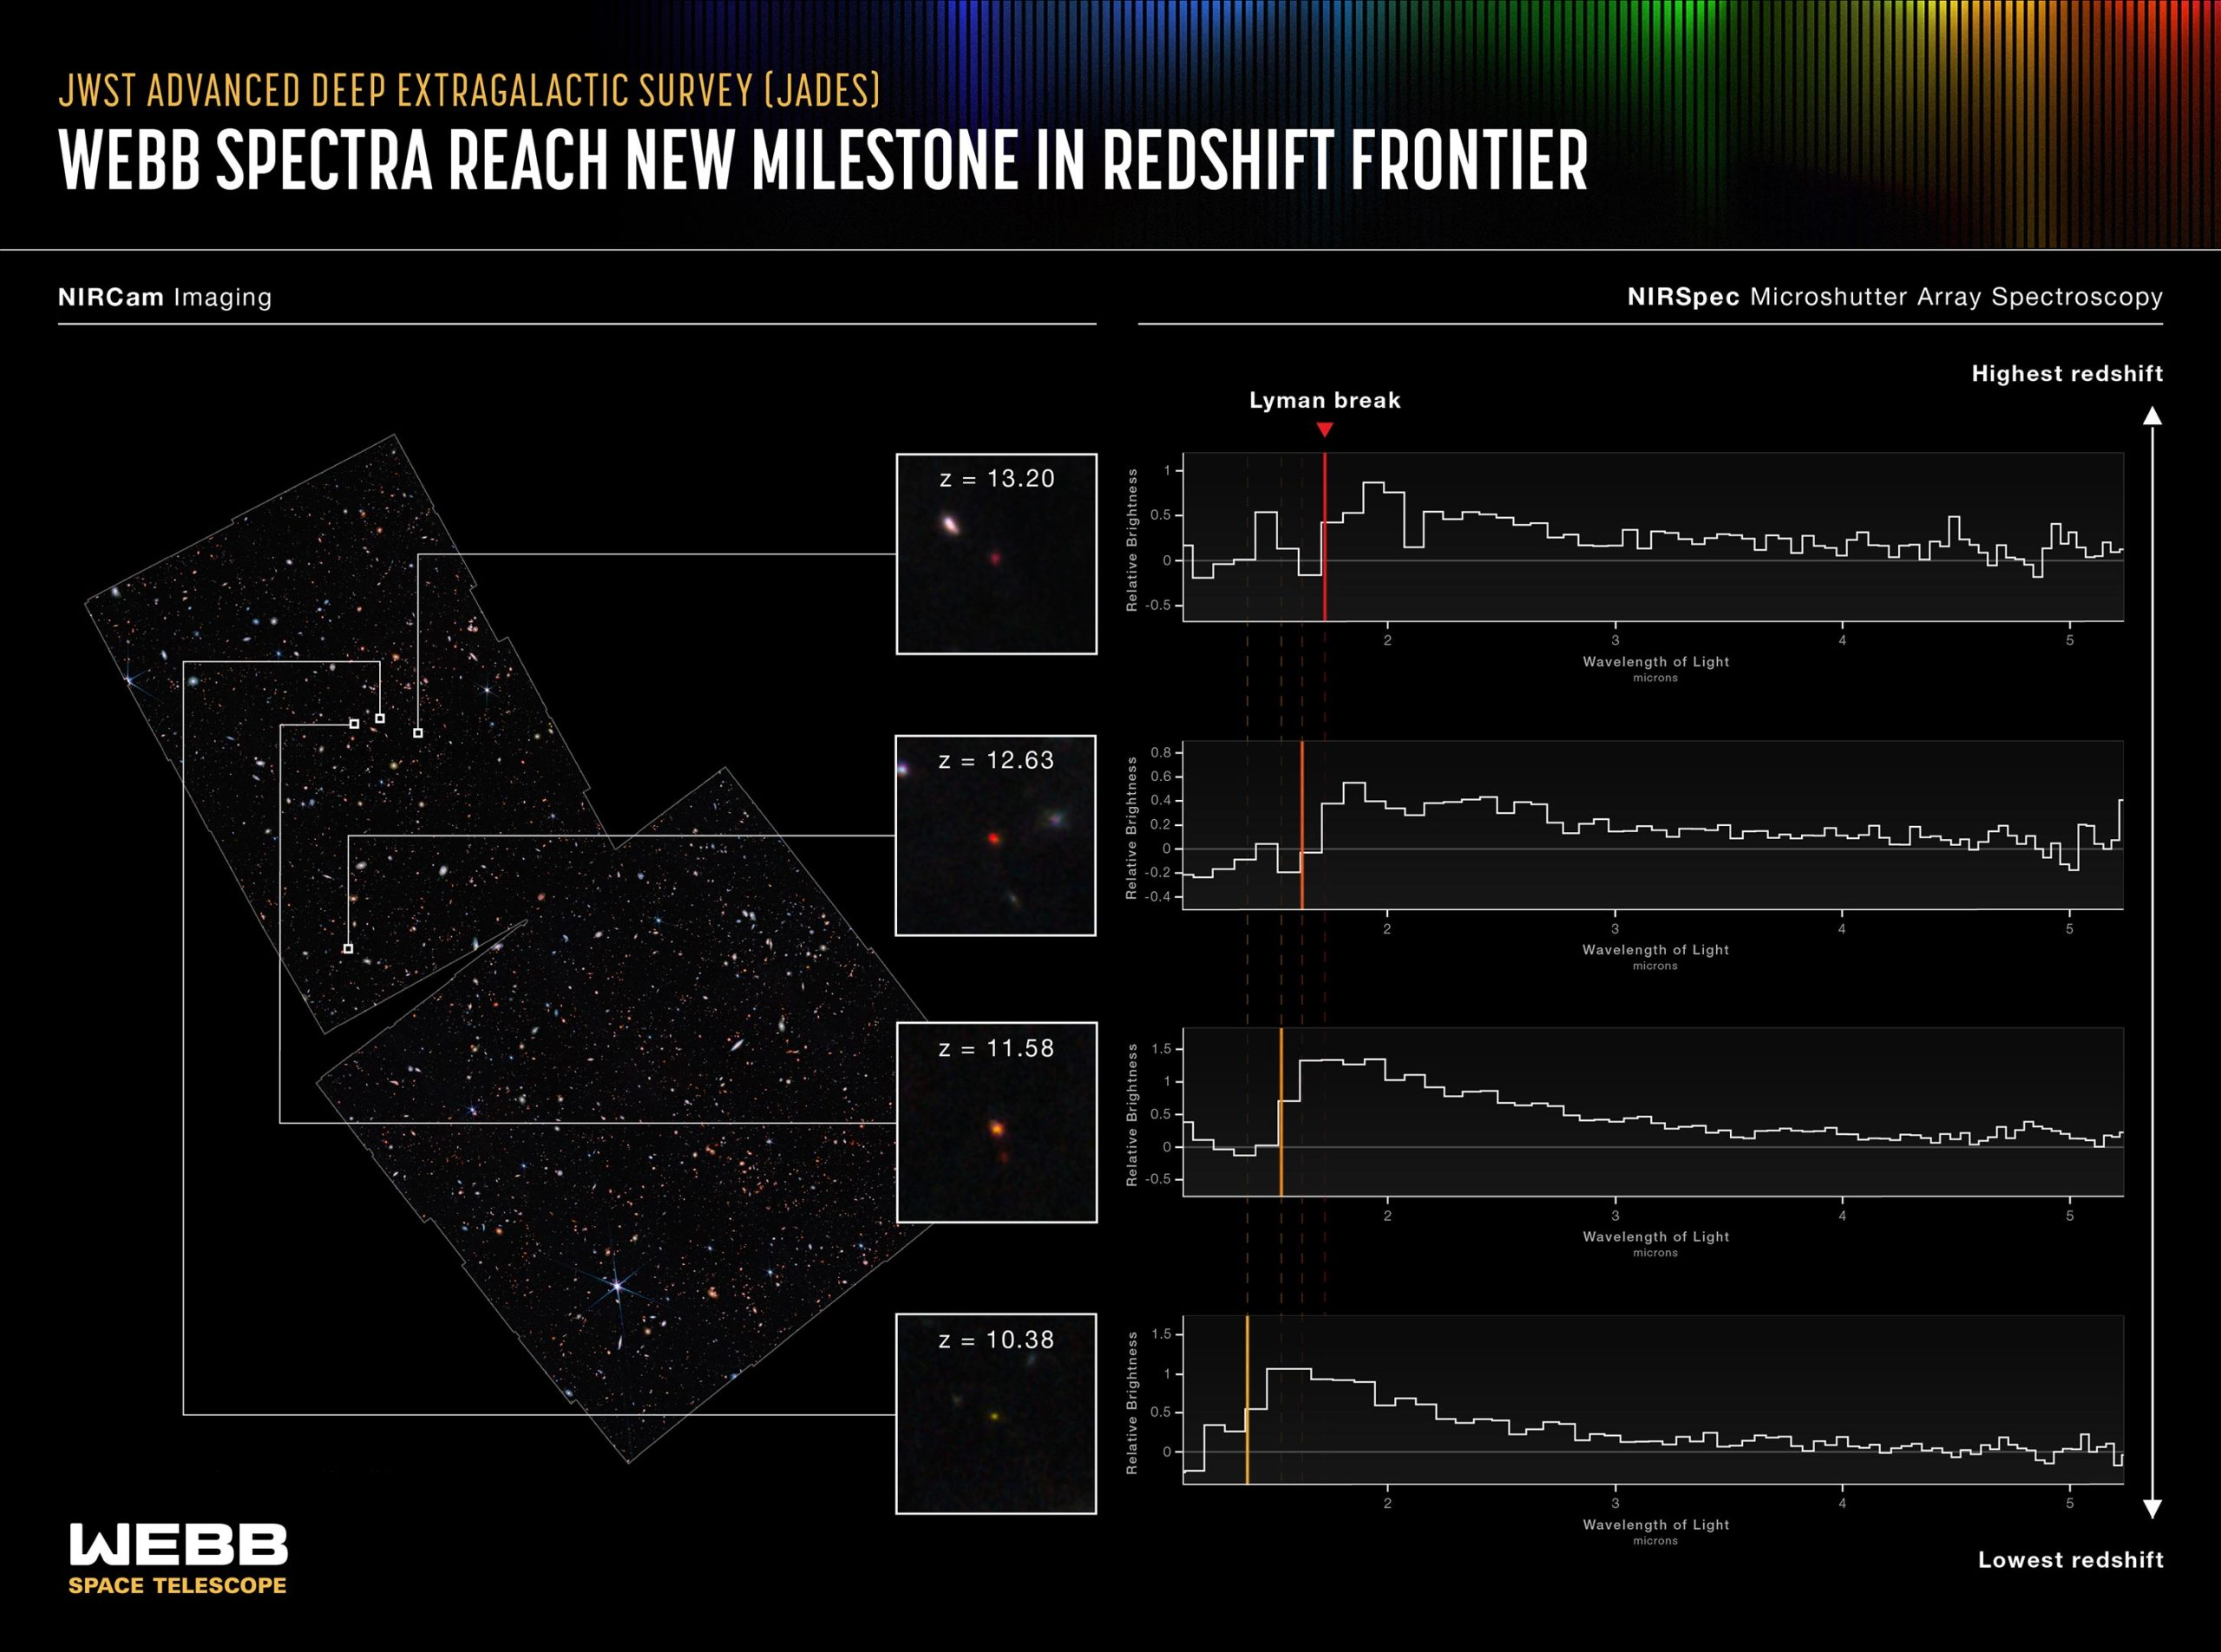 De James Webb Space Telescope detecteert de verste sterrenstelsels